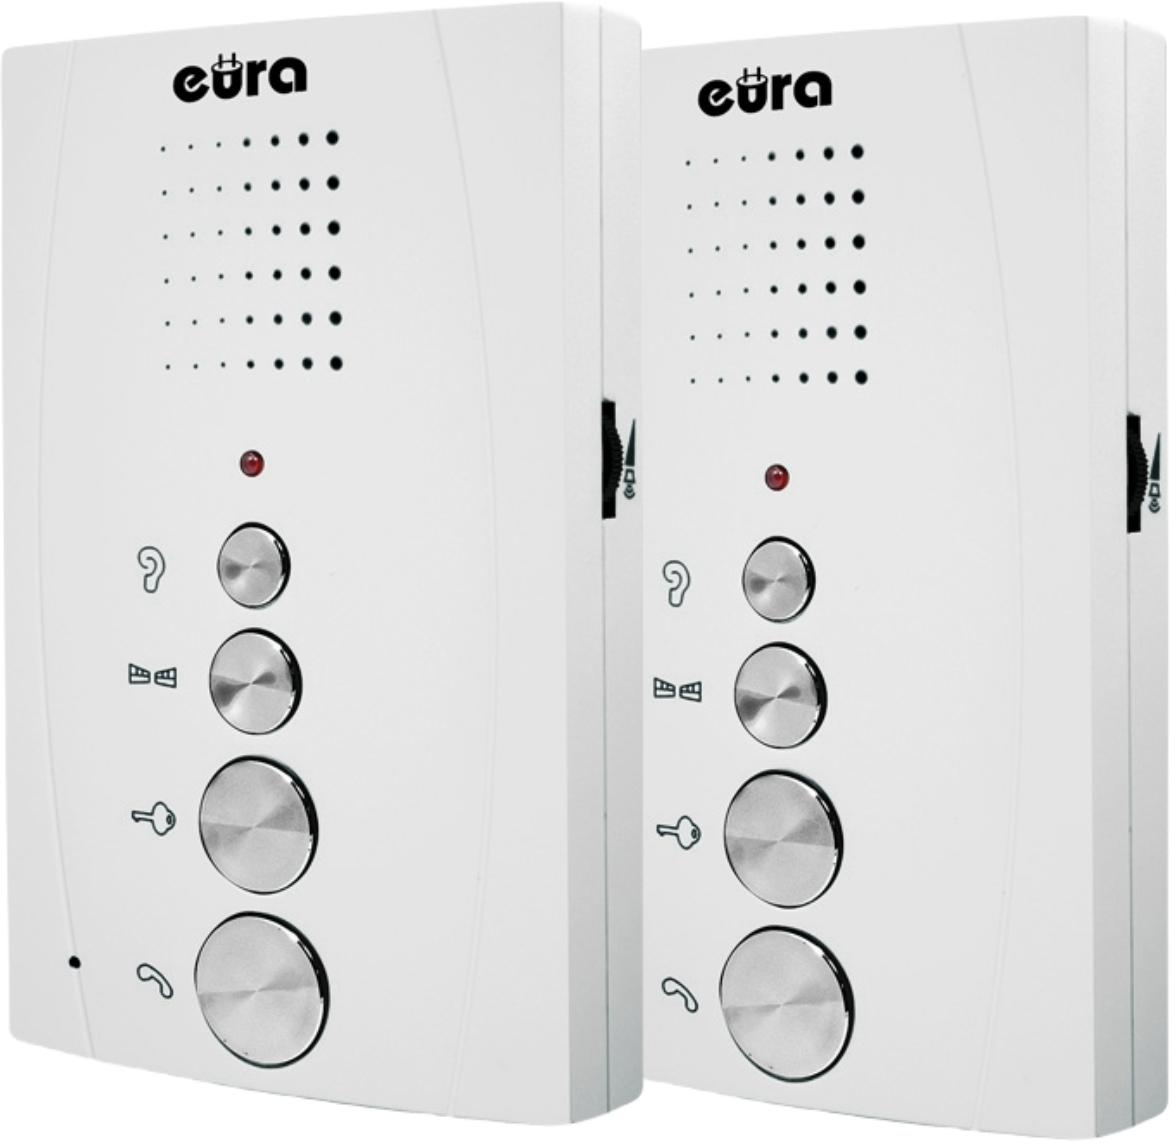 2 unifony zestawu EURA ADP-51A3 DIFESA - specyfikacja: